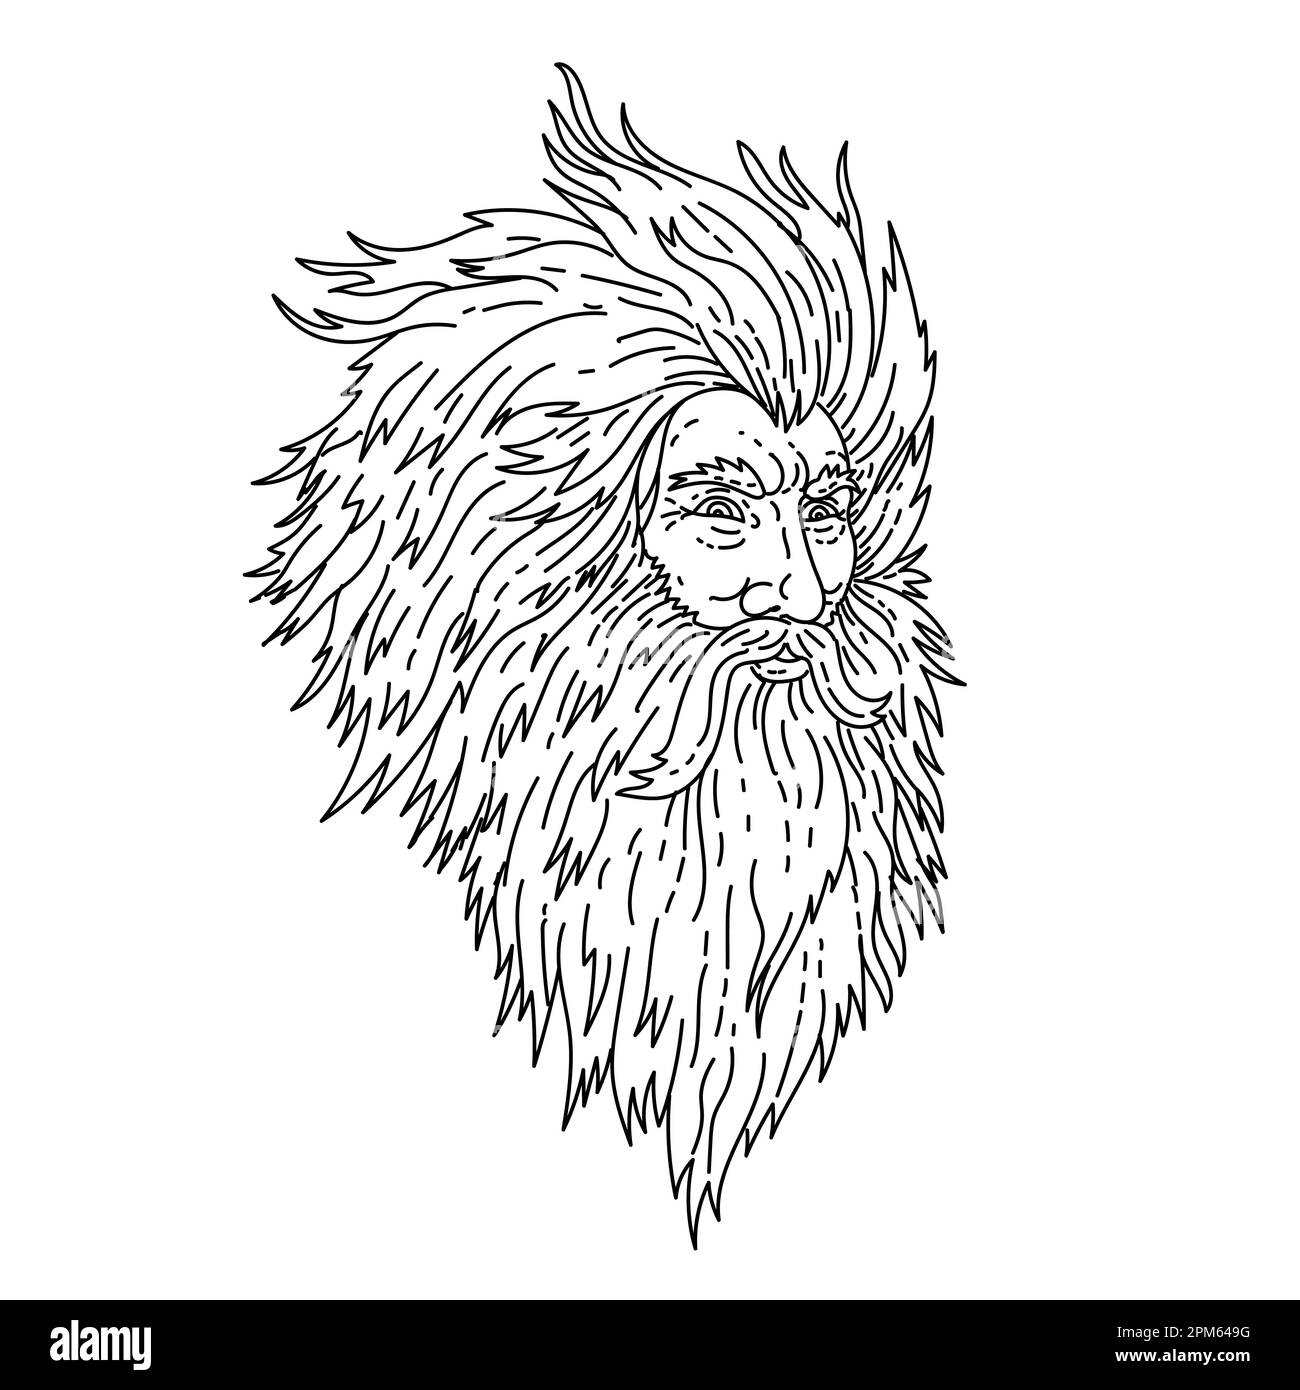 Einzeilige Darstellung des Kopfes des wütenden griechischen gottes Zeus oder des römischen gottes Jupiter mit Bart in einzeiliger Zeichenform. Stockfoto